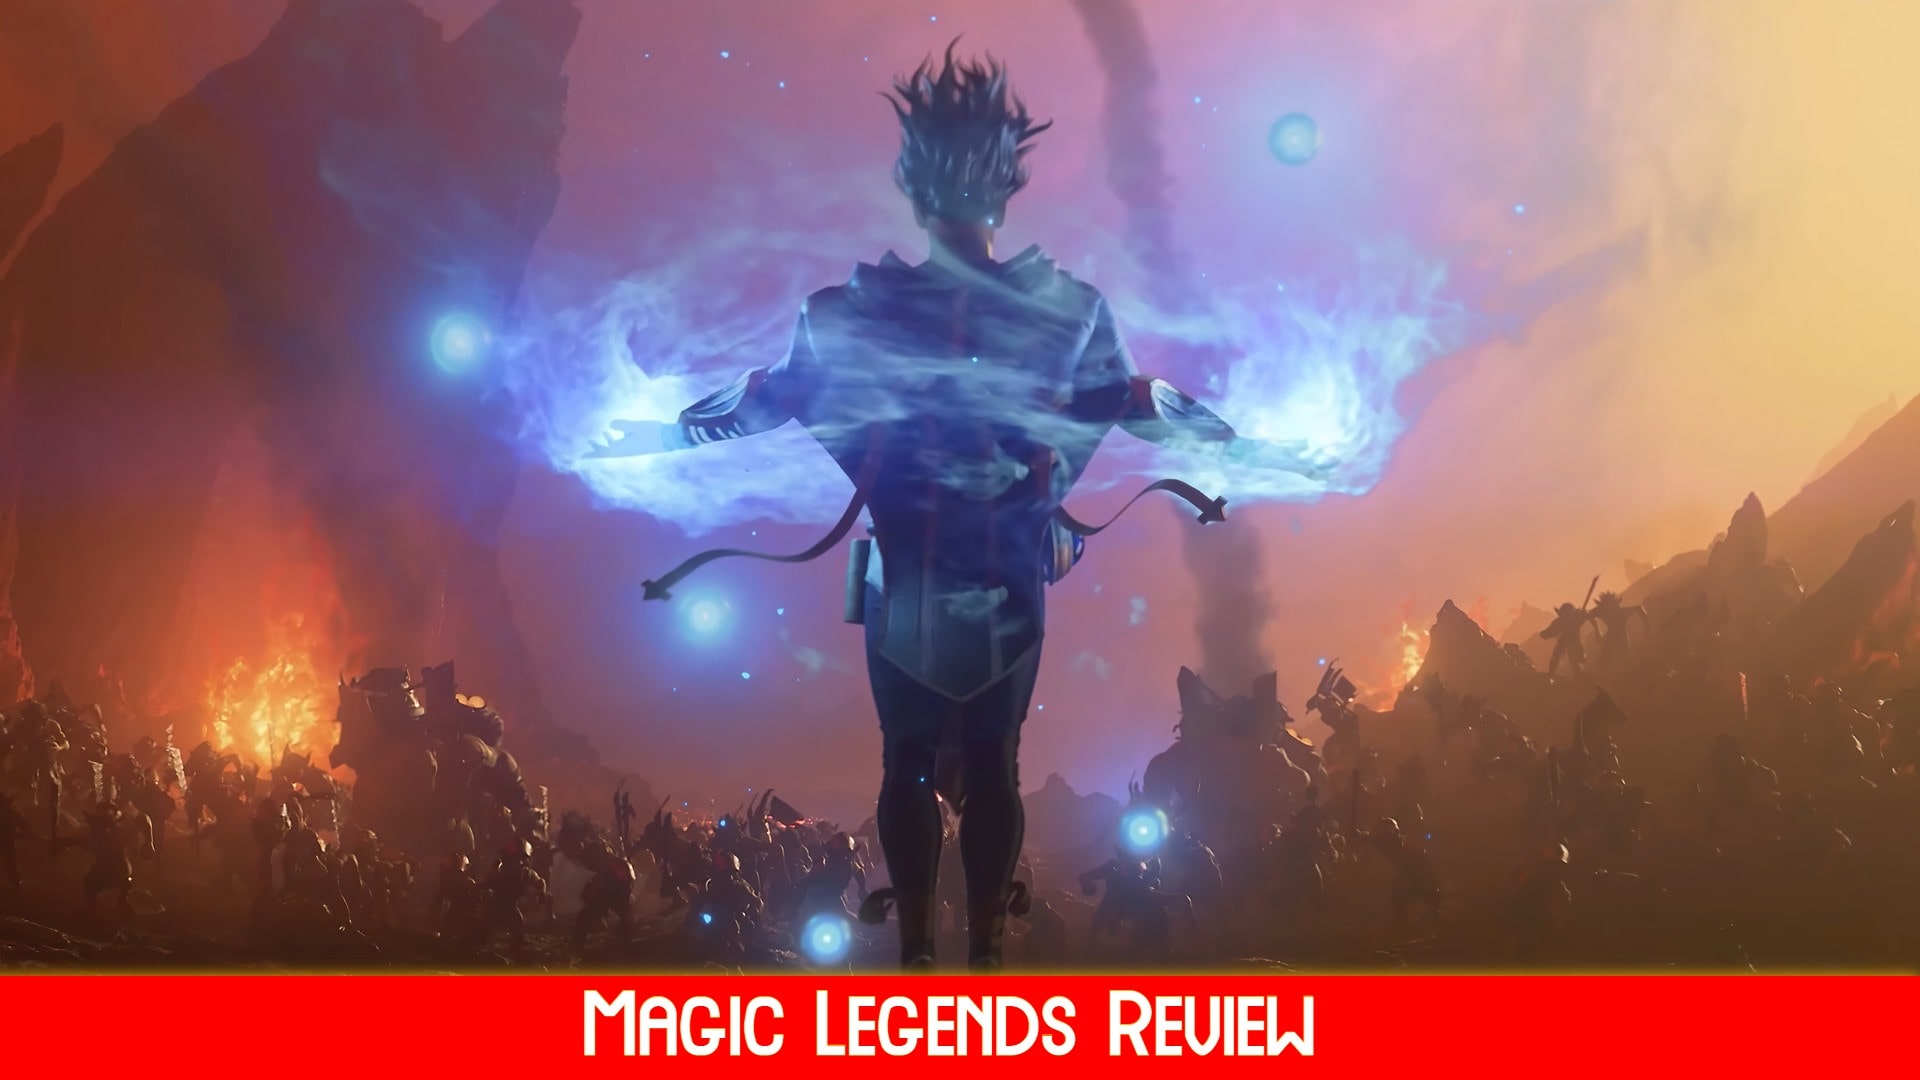 New Magic Legends 2021 Wallpapers